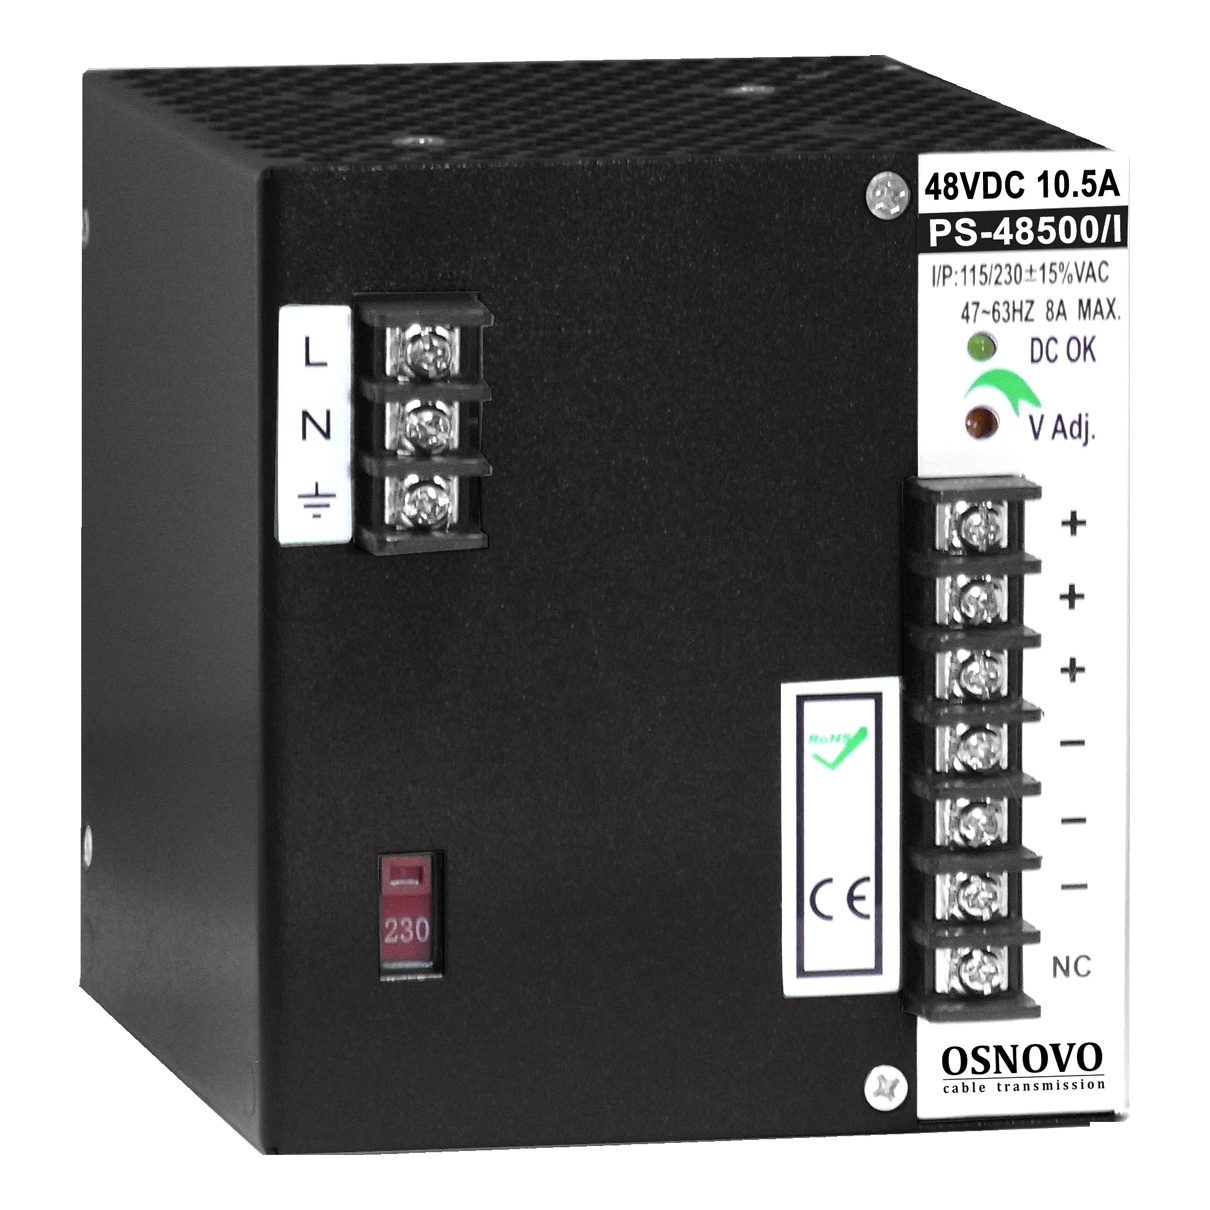 OSNOVO PS-48500/I Промышленный блок питания DC48V, 10.5A (500W)